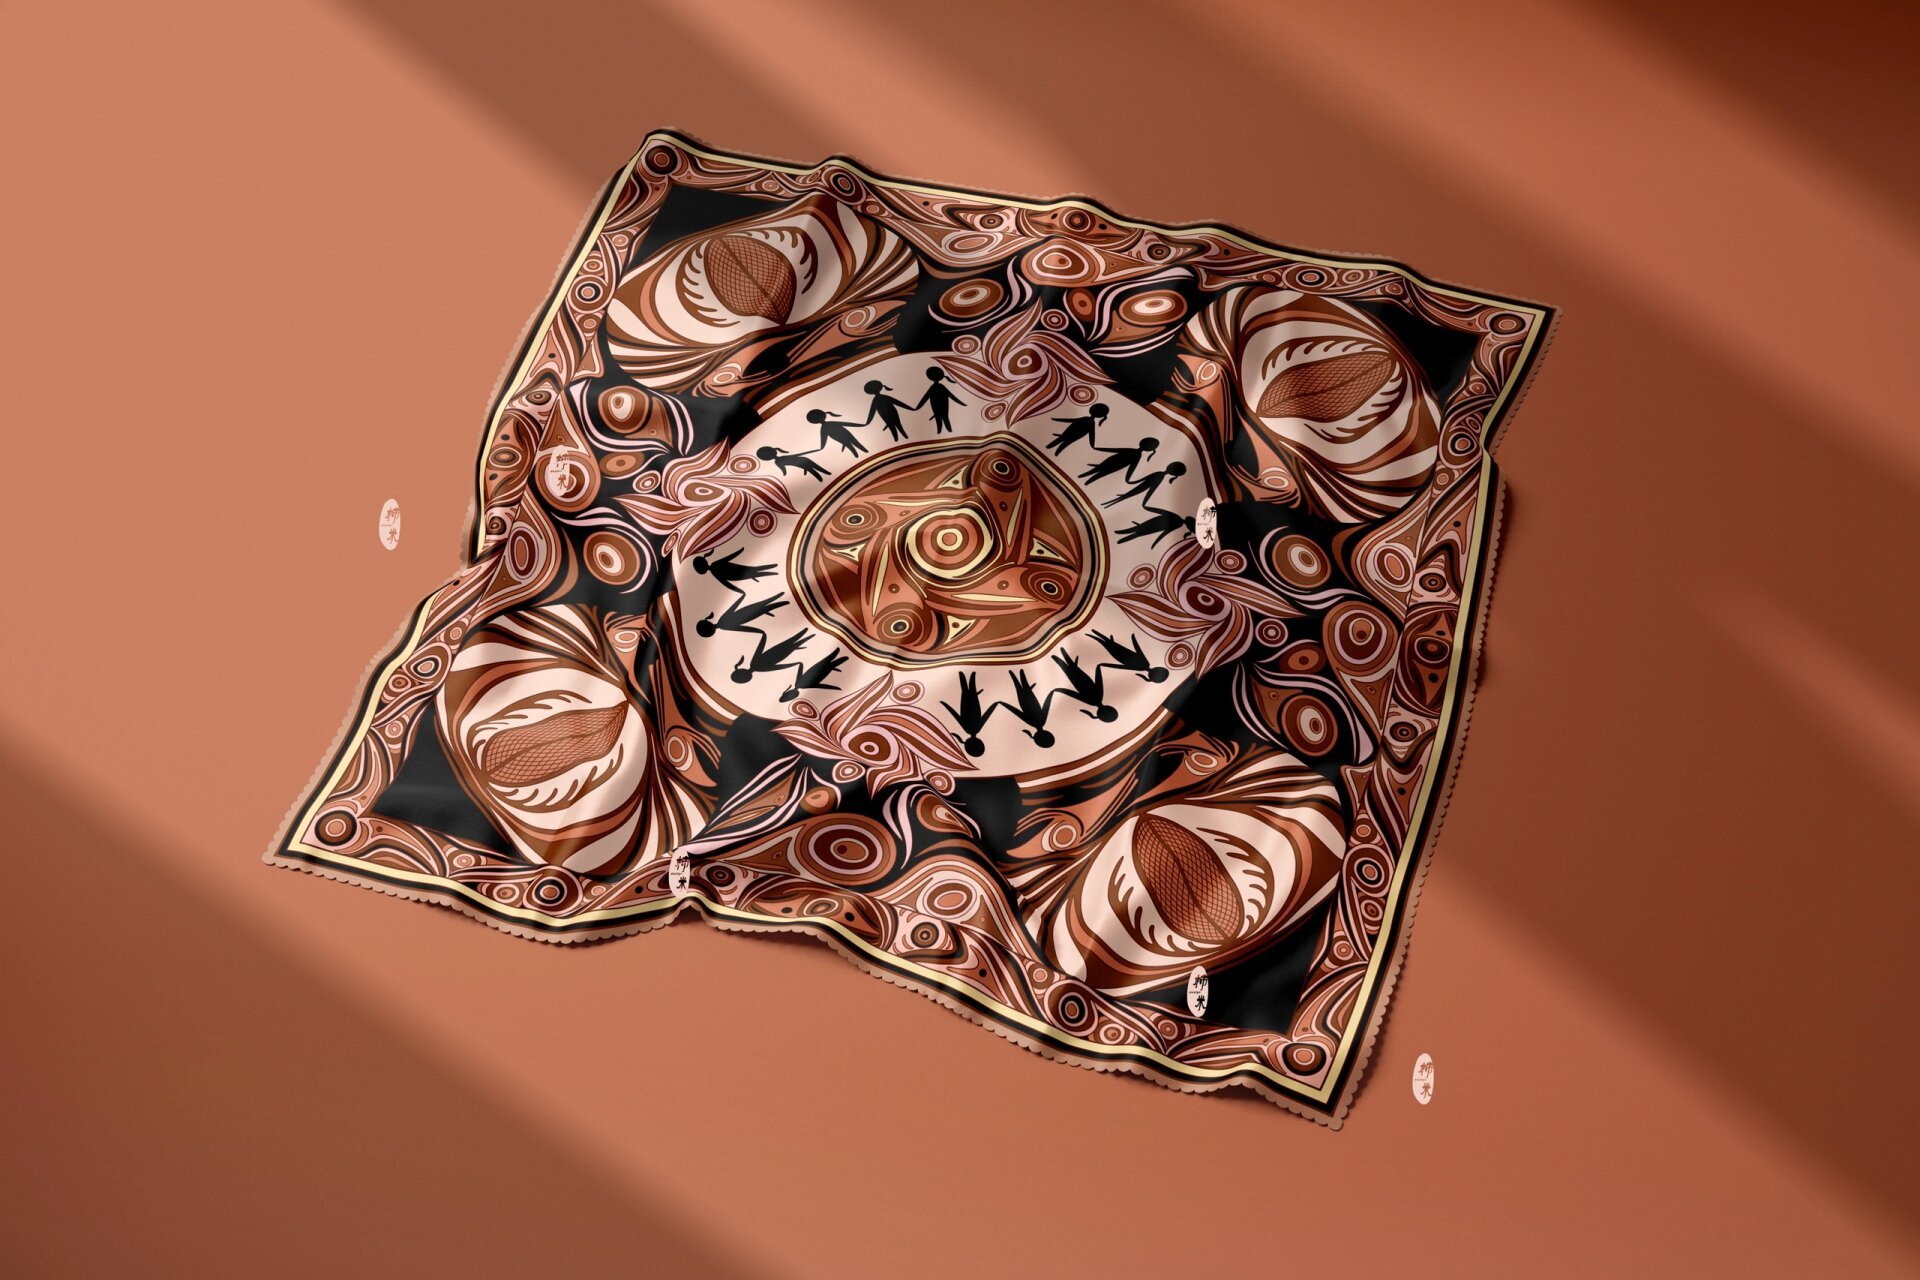 彩陶纹样丝巾设计 马家窑文化文创类设计主要提取马家窑陶器的装饰